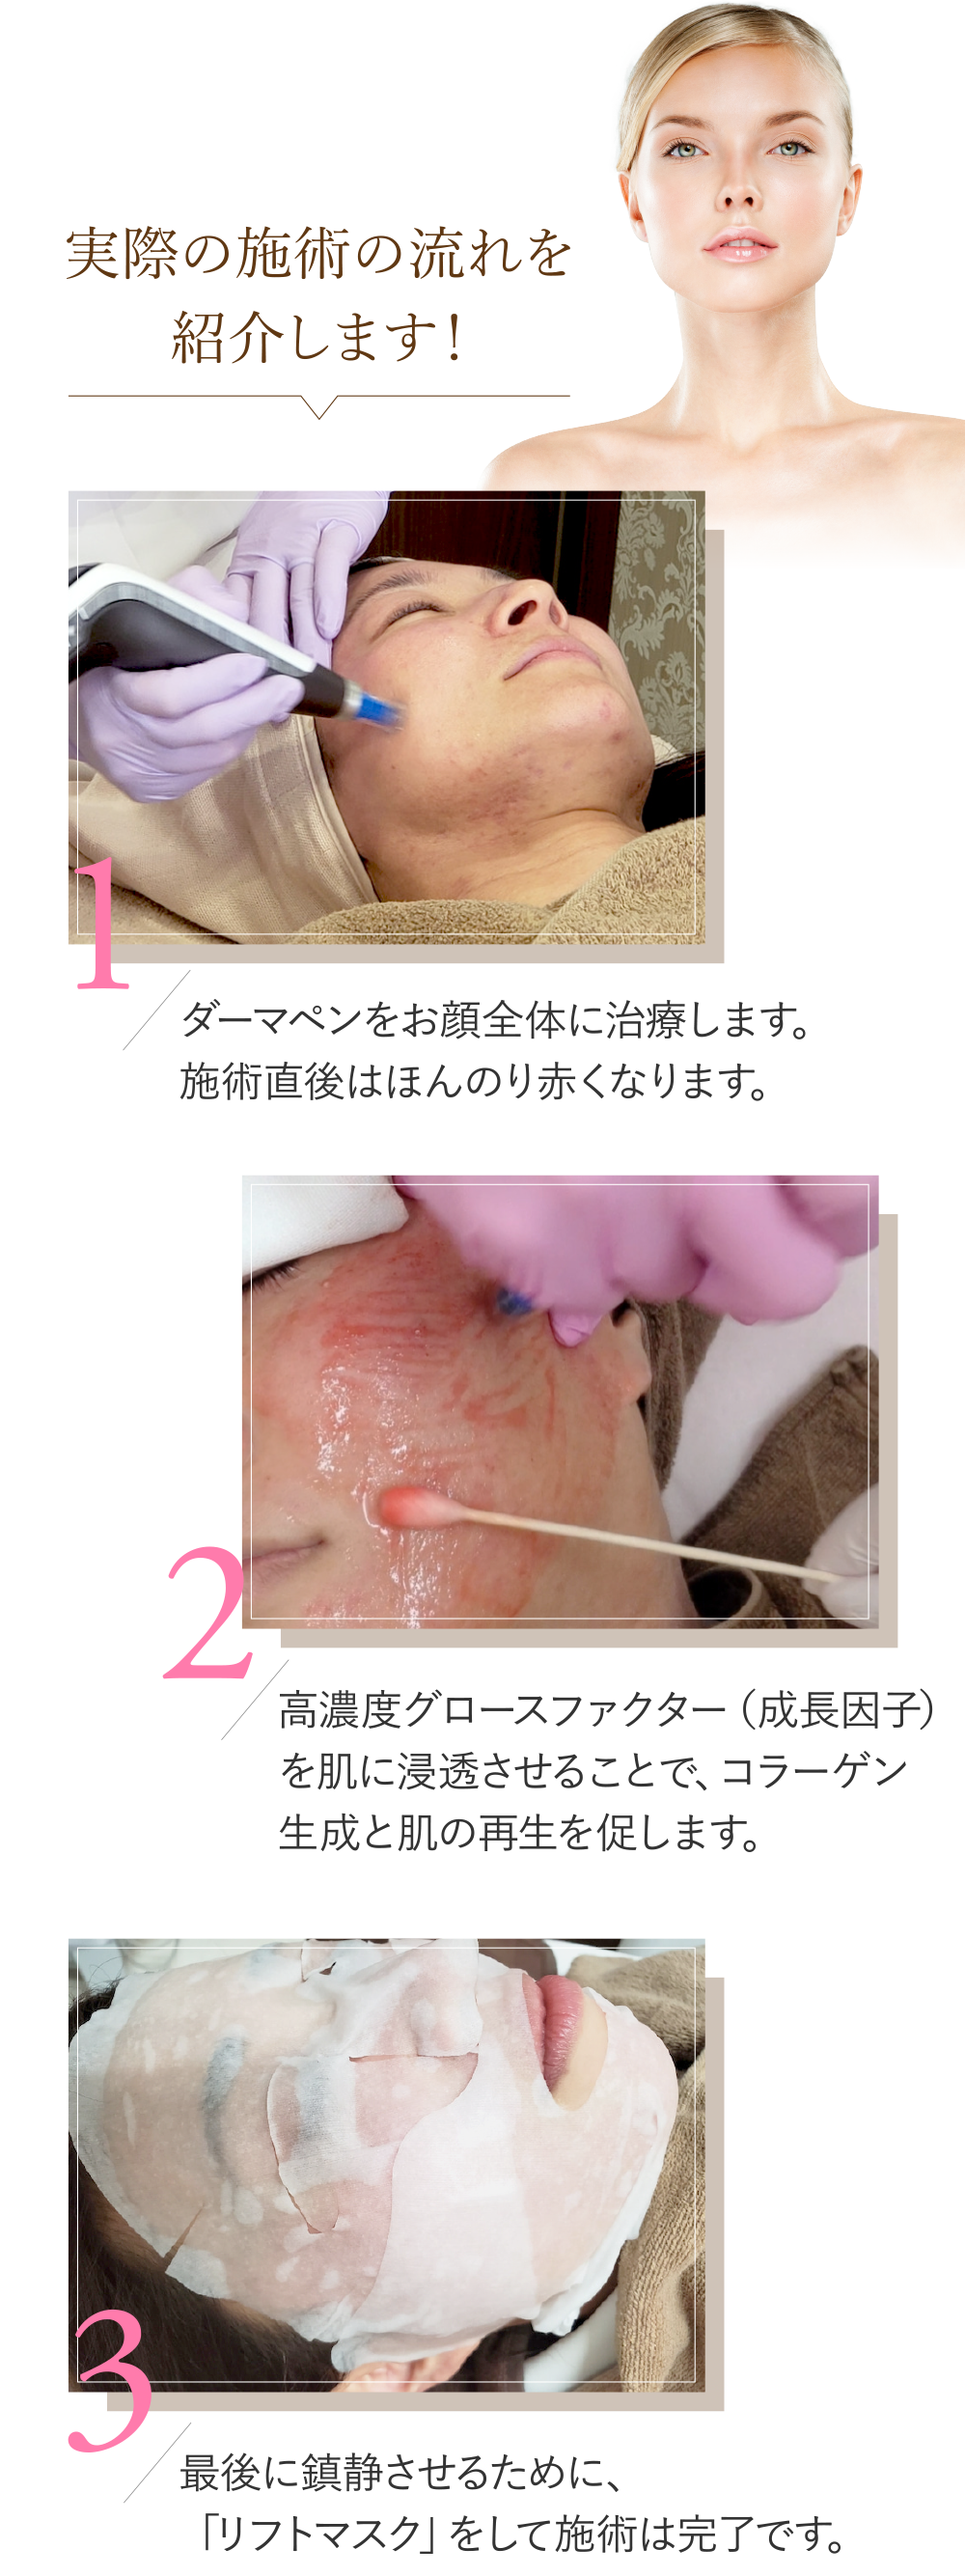 実際の施術の流れを紹介します！(1)ダーマペンをお顔全体に治療します。施術直後はほんのり赤くなります。(2)高濃度グロースファクター（成長因子）を肌に浸透させることで、コラーゲン生成と肌の再生を促します。(3)最後に鎮静させるために、「リフトマスク」をして施術は完了です。